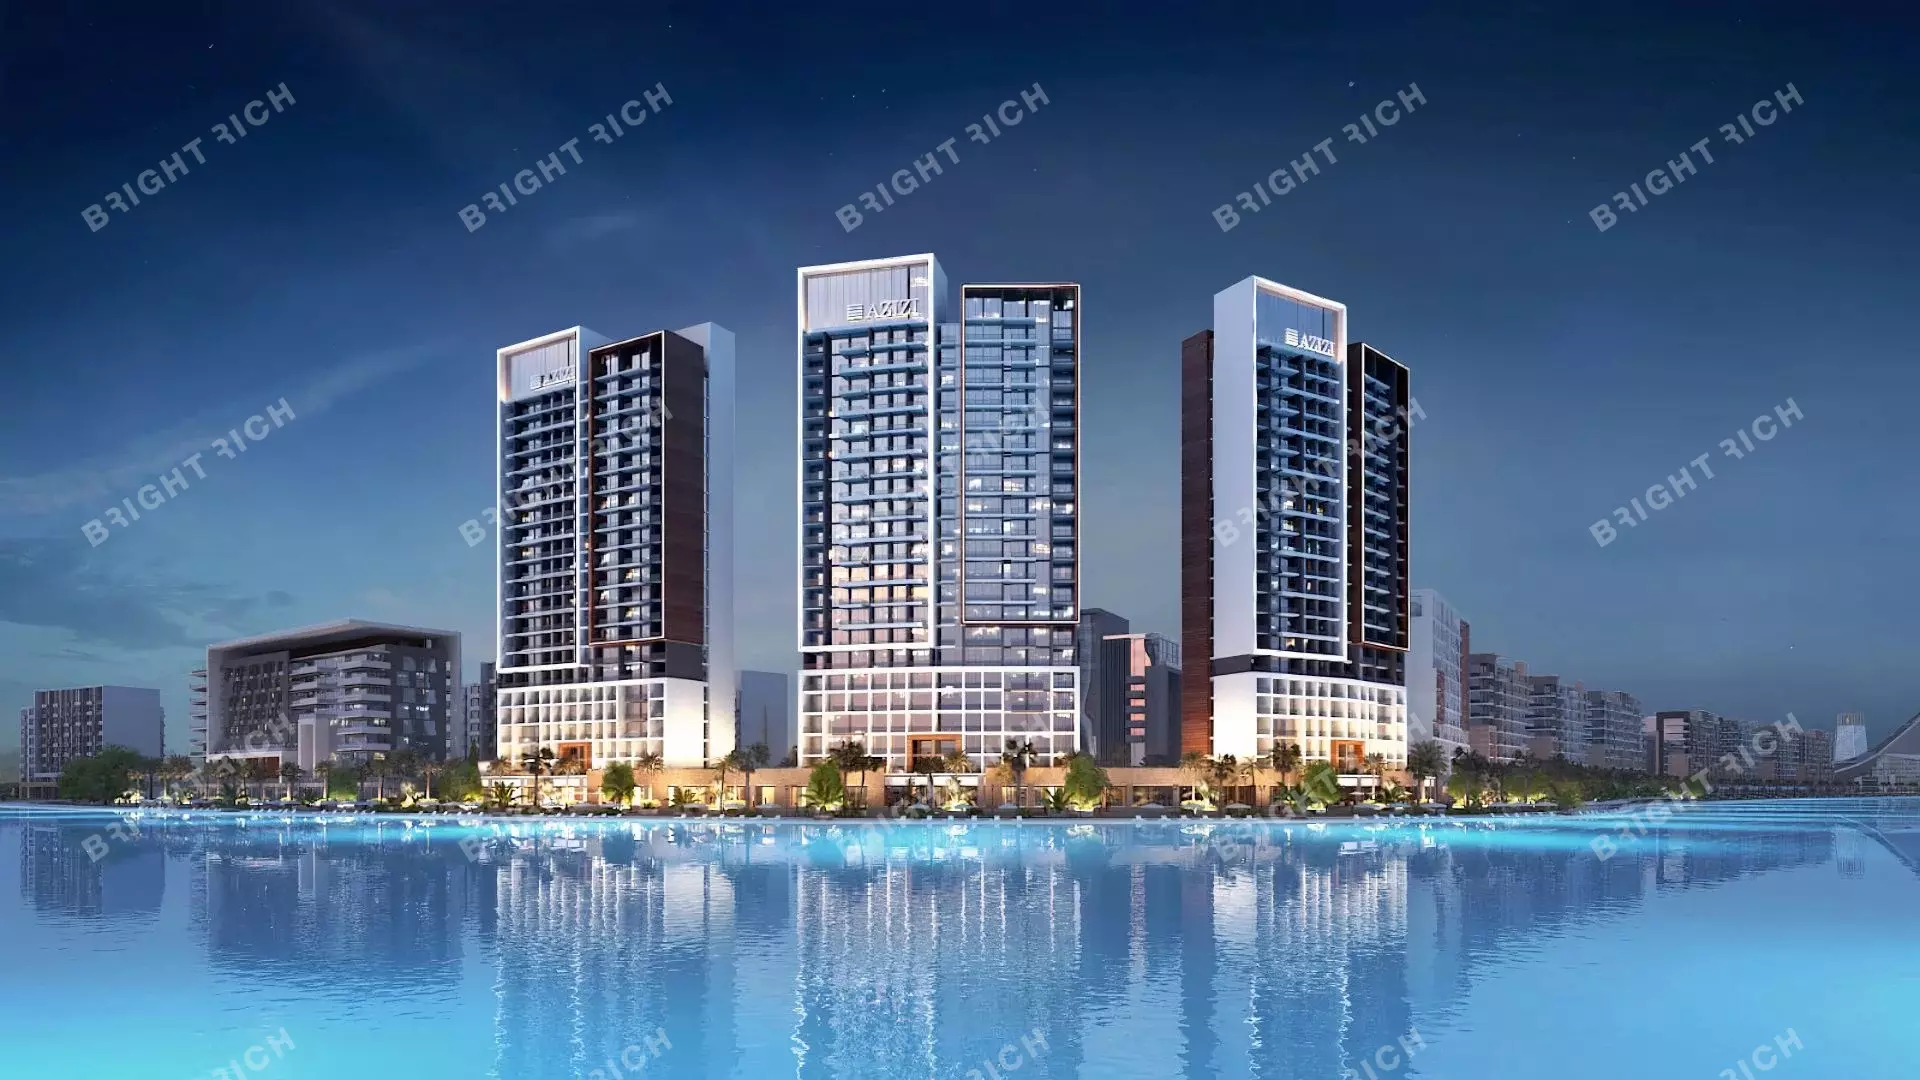 Azizi Riviera Building 25, apart complex in Dubai